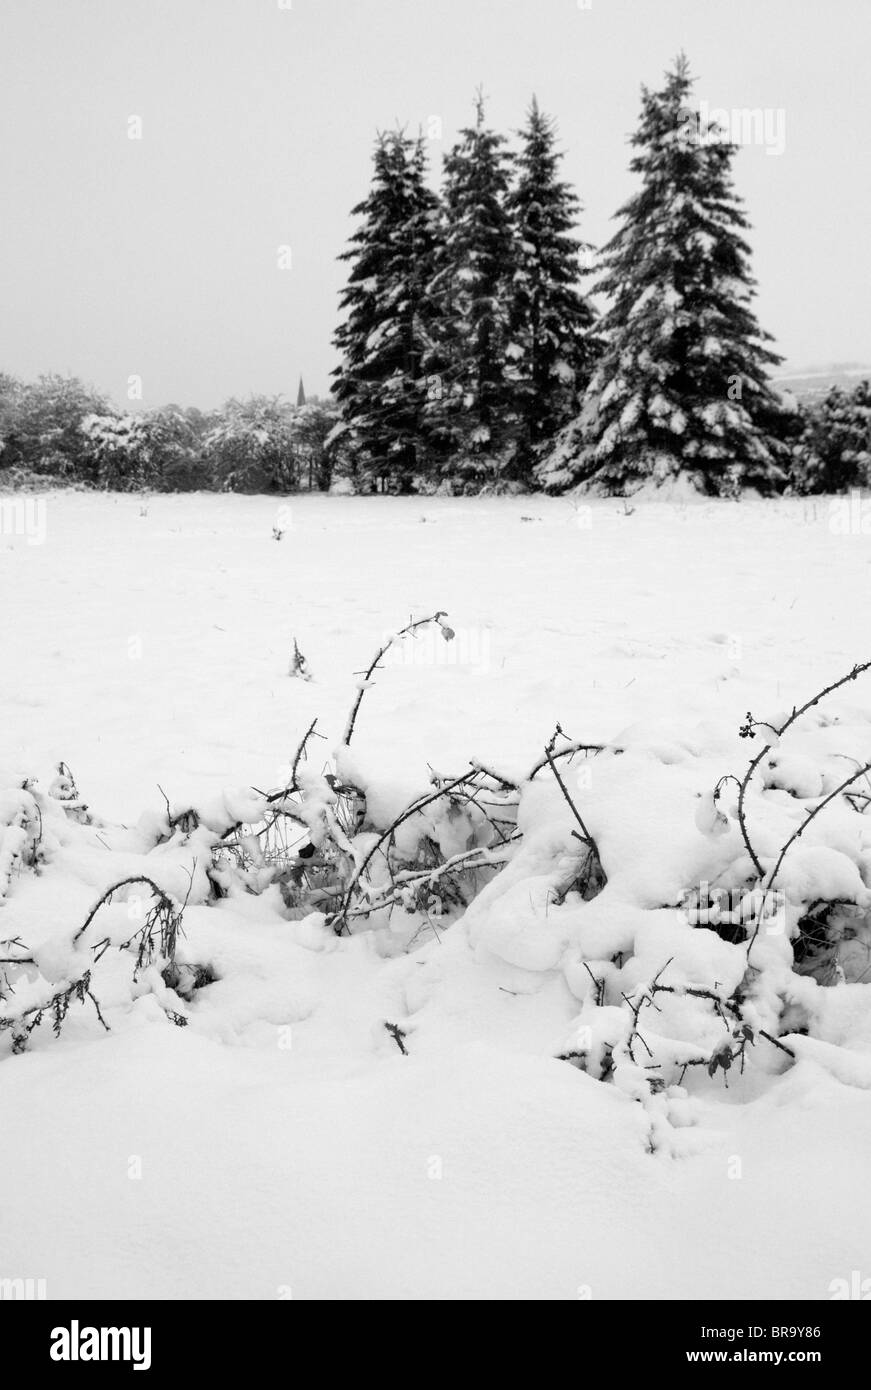 Schwarz und weiß; Bäume im Schnee mit Schnee bedeckt Gestrüpp im Vordergrund. Stockfoto